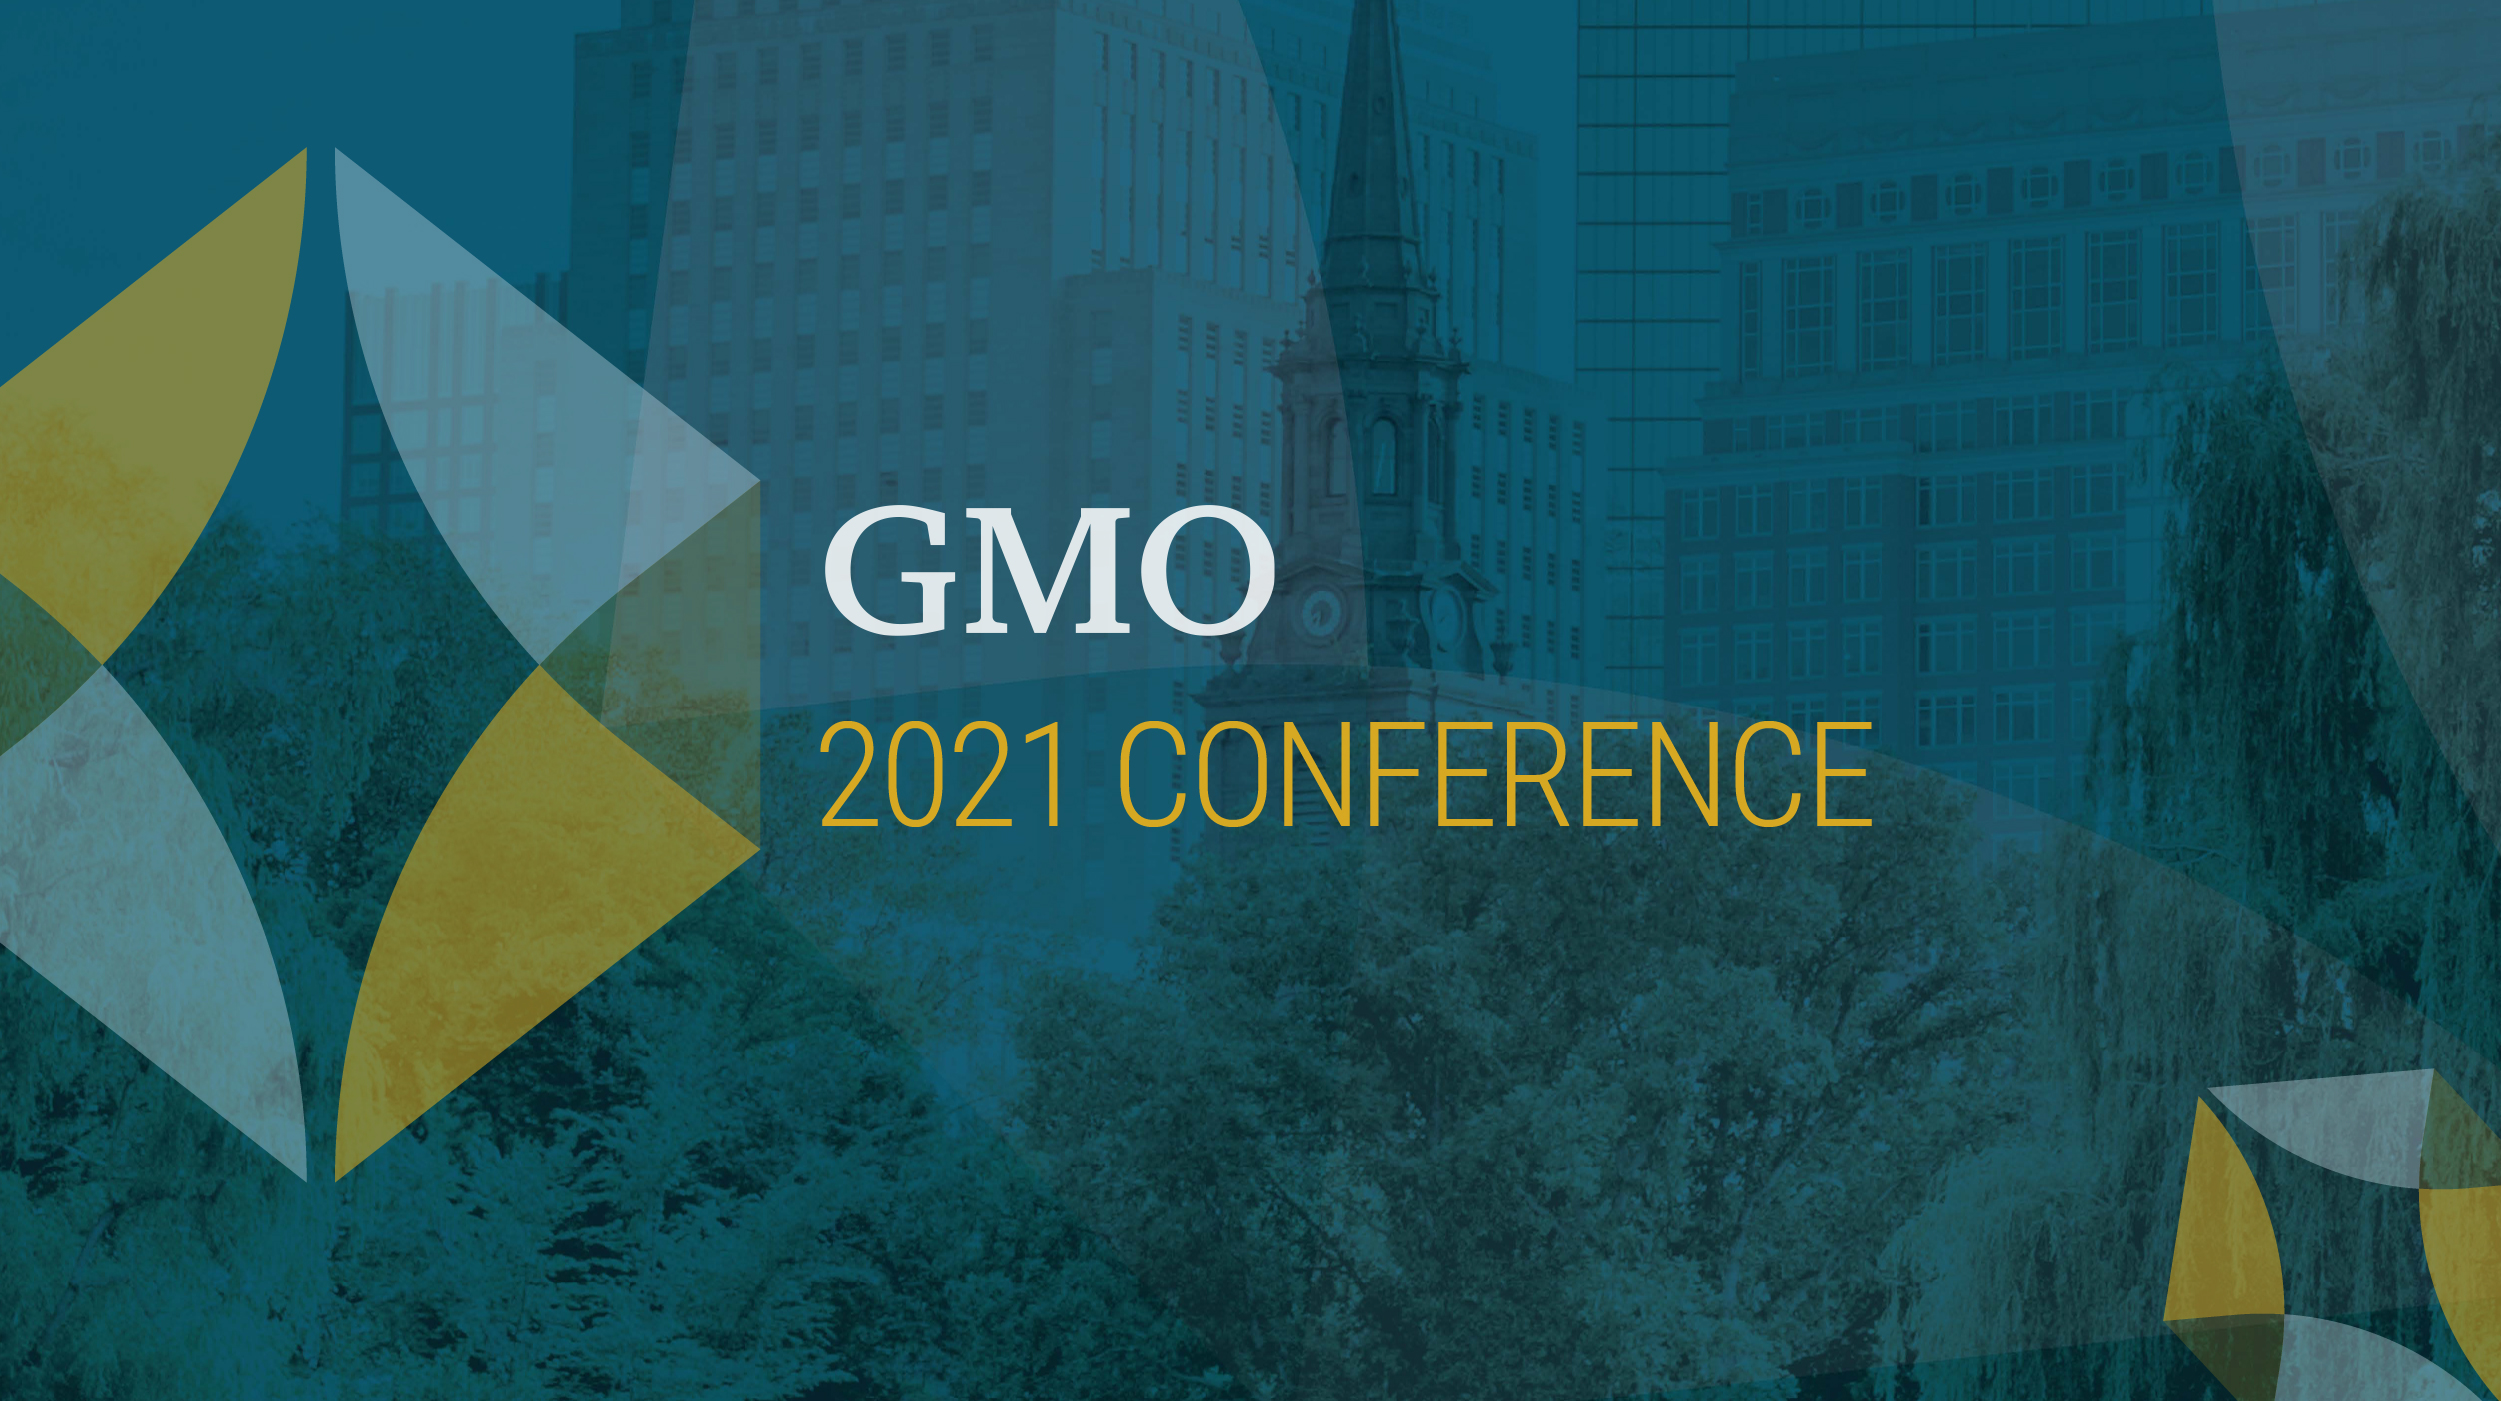 2021 GMO Conference logo